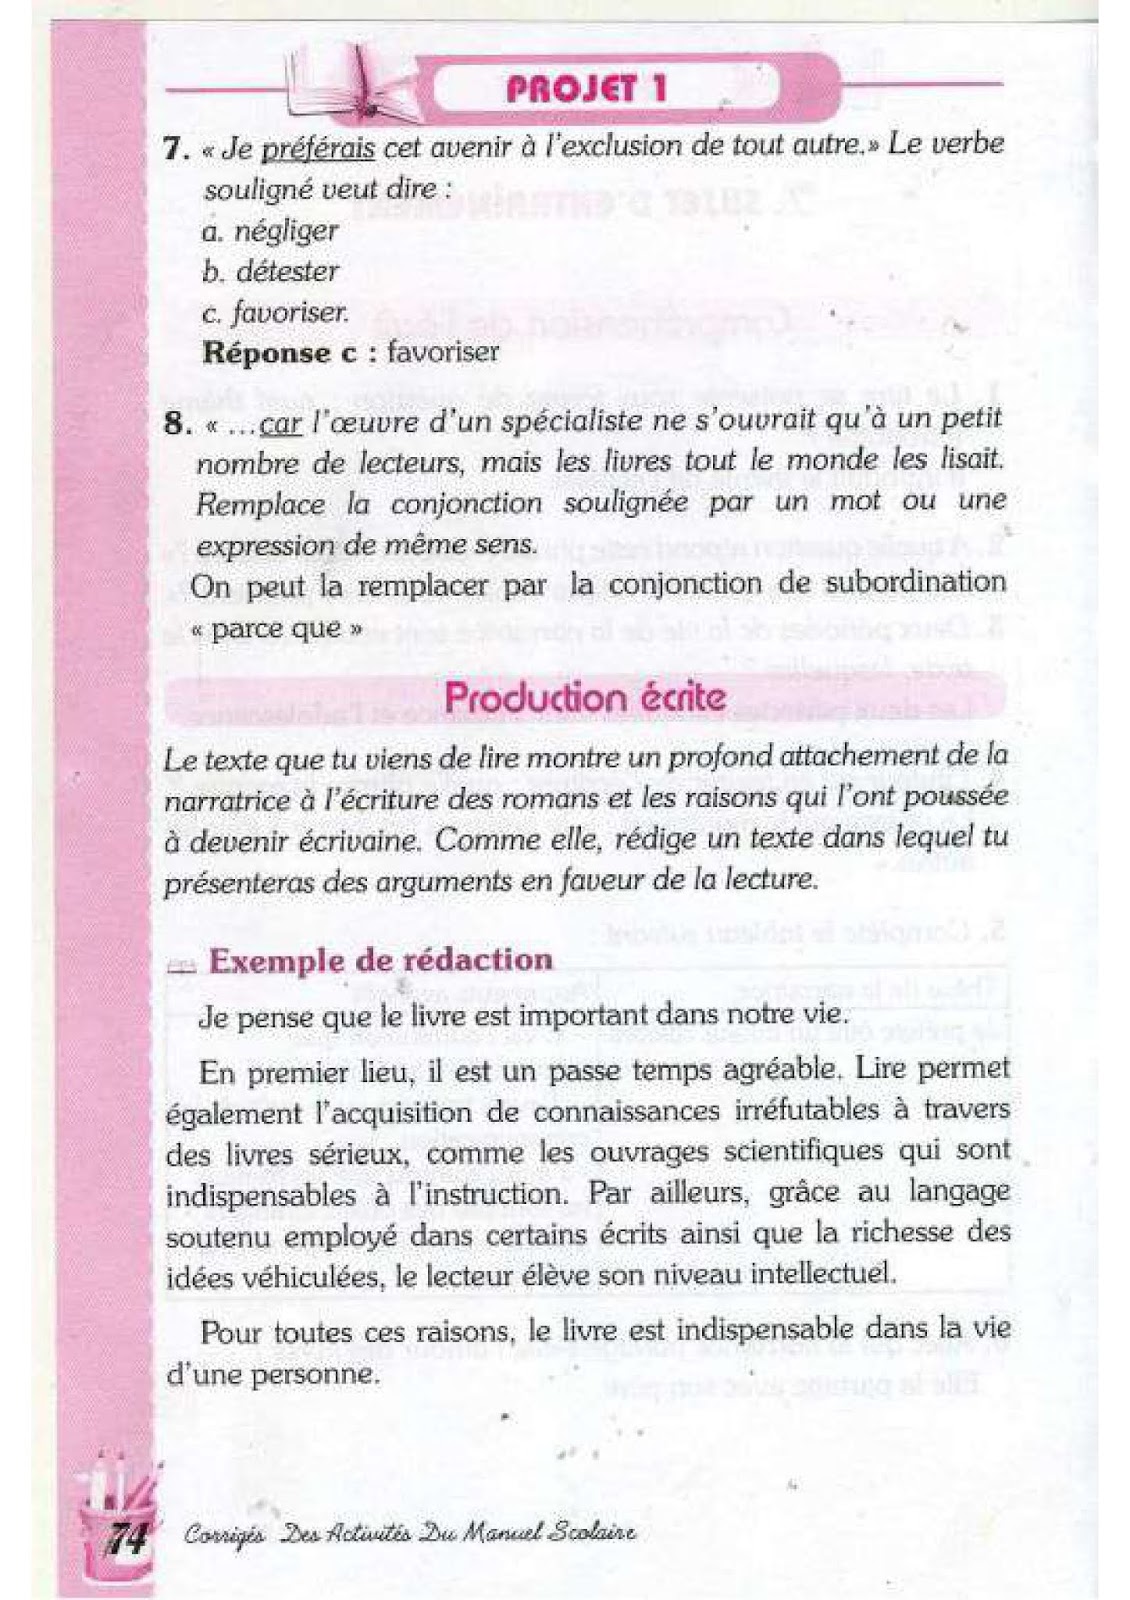 حل تمارين صفحة 65 الفرنسية للسنة الرابعة متوسط - الجيل الثاني